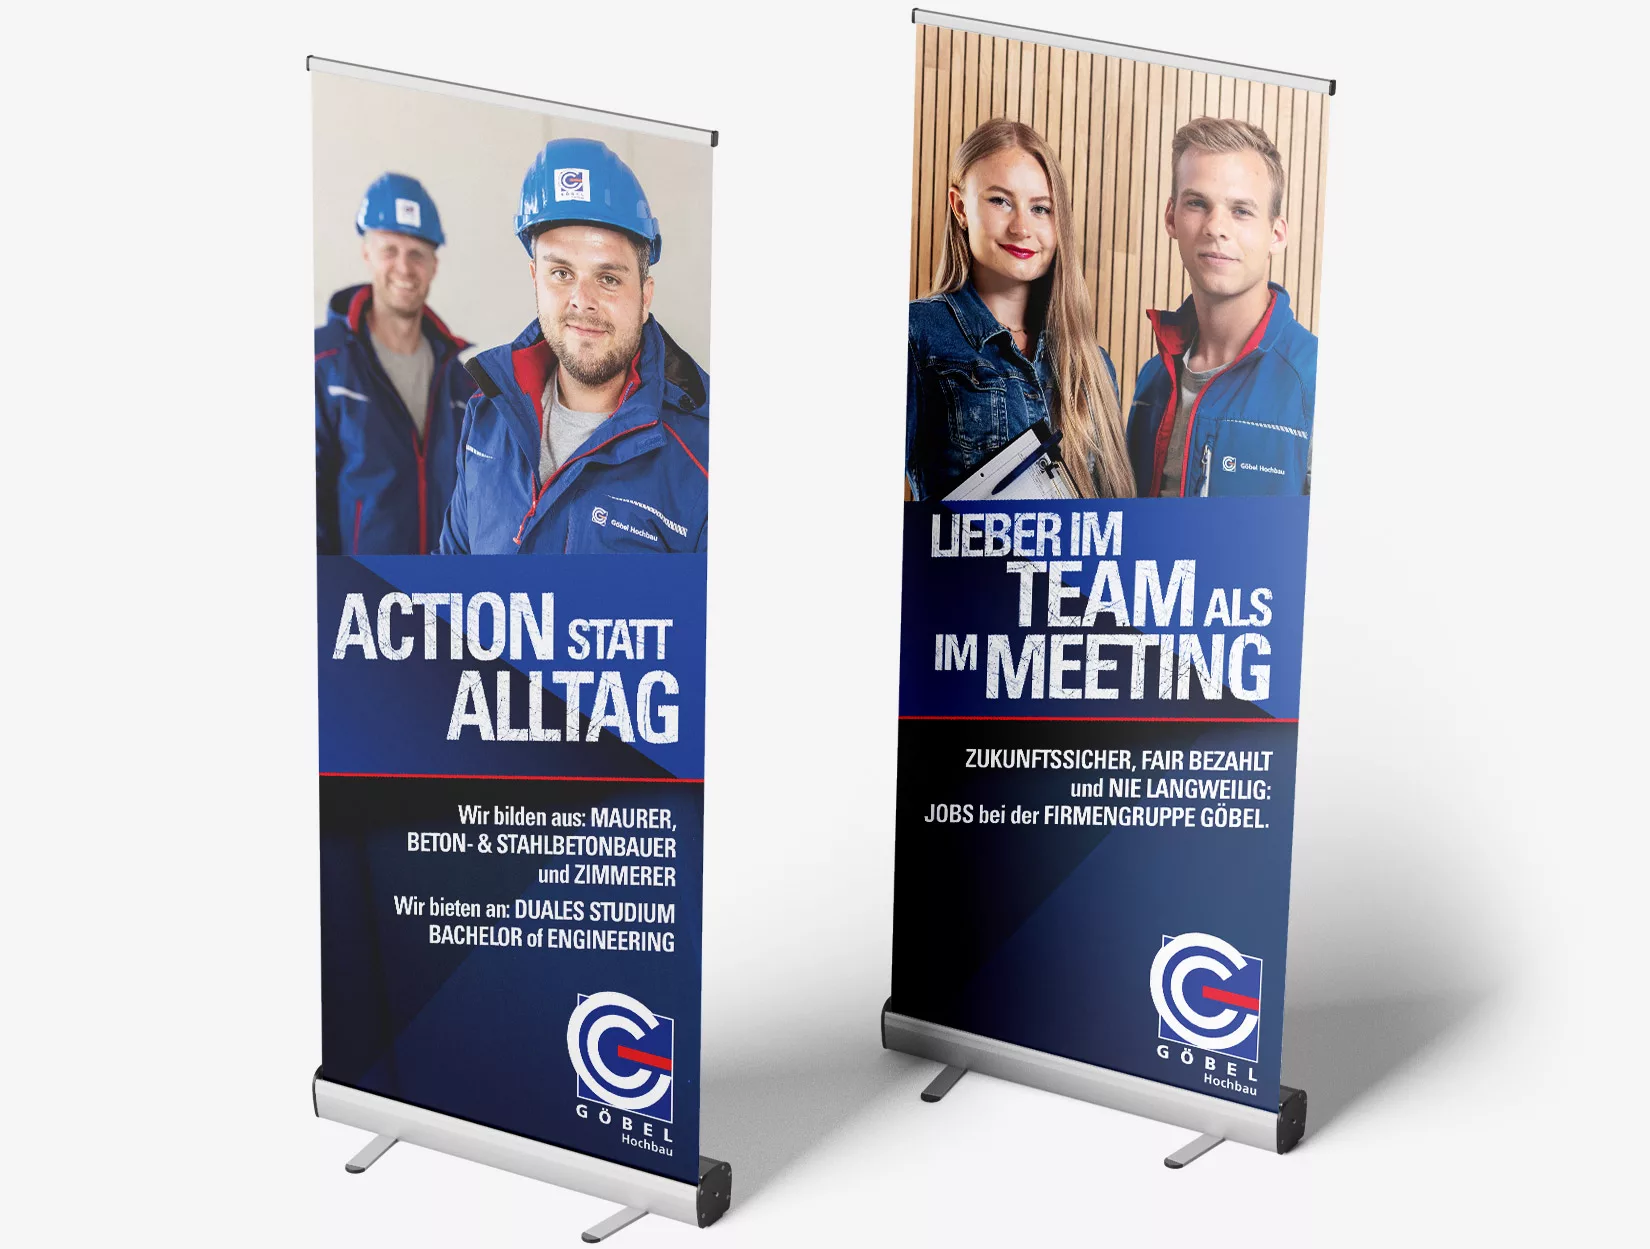 Zwei Roll-Ups mit Firmengruppe Göbel Mitarbeitern mit den Texten "Action statt Alltag" und "Lieber im Team als im Meeting".